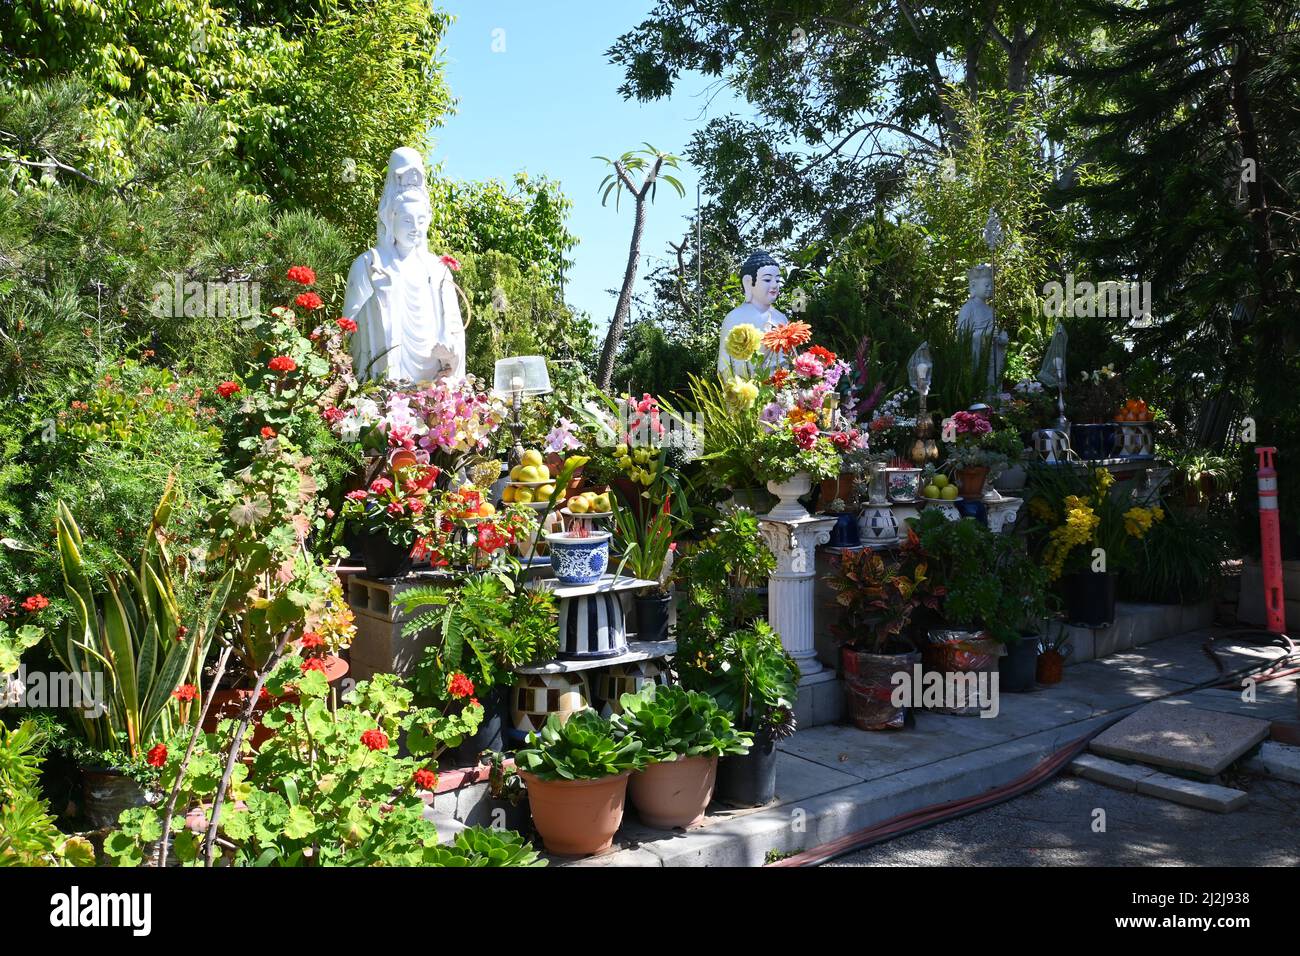 SANTA ANA, CALIFORNIA - 10 MAR 2022: Shrine at the International Sangha Bhiksu Buddhist Association. Stock Photo